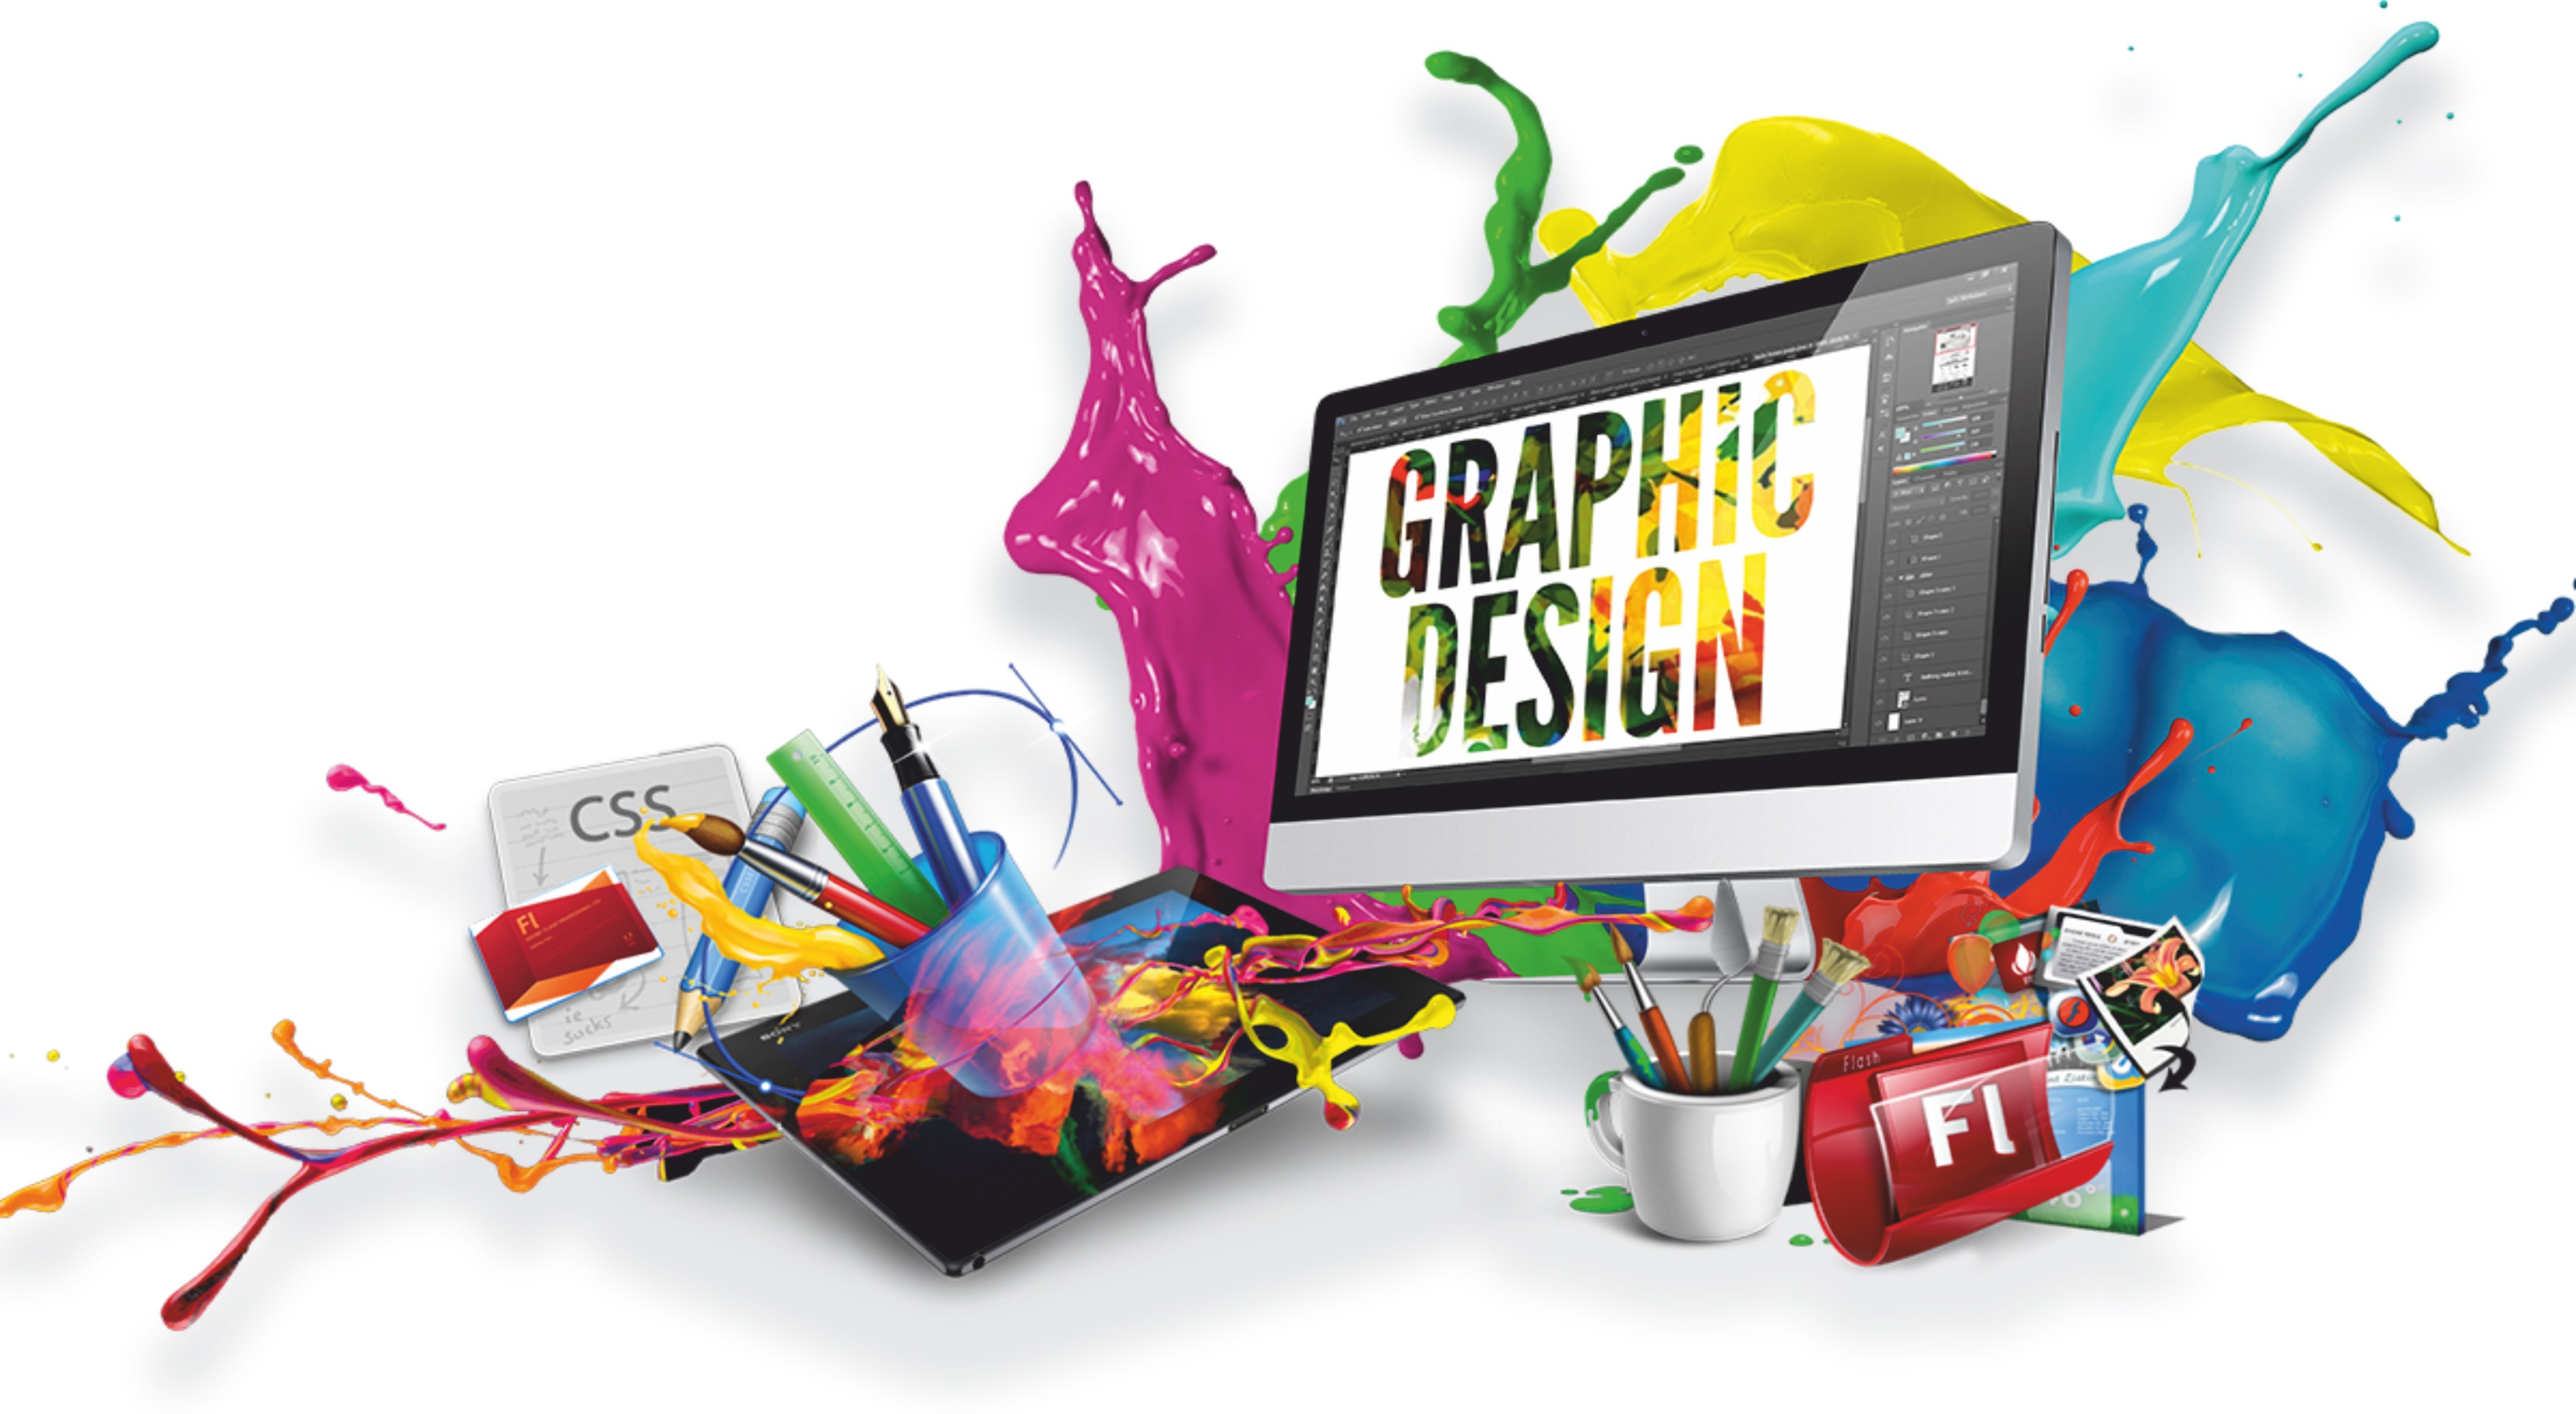 Создание рекламного объявления. Графический дизайн. Компьютерная Графика и дизайн. Веб дизайн. Графический дизайн и мультимедиа.